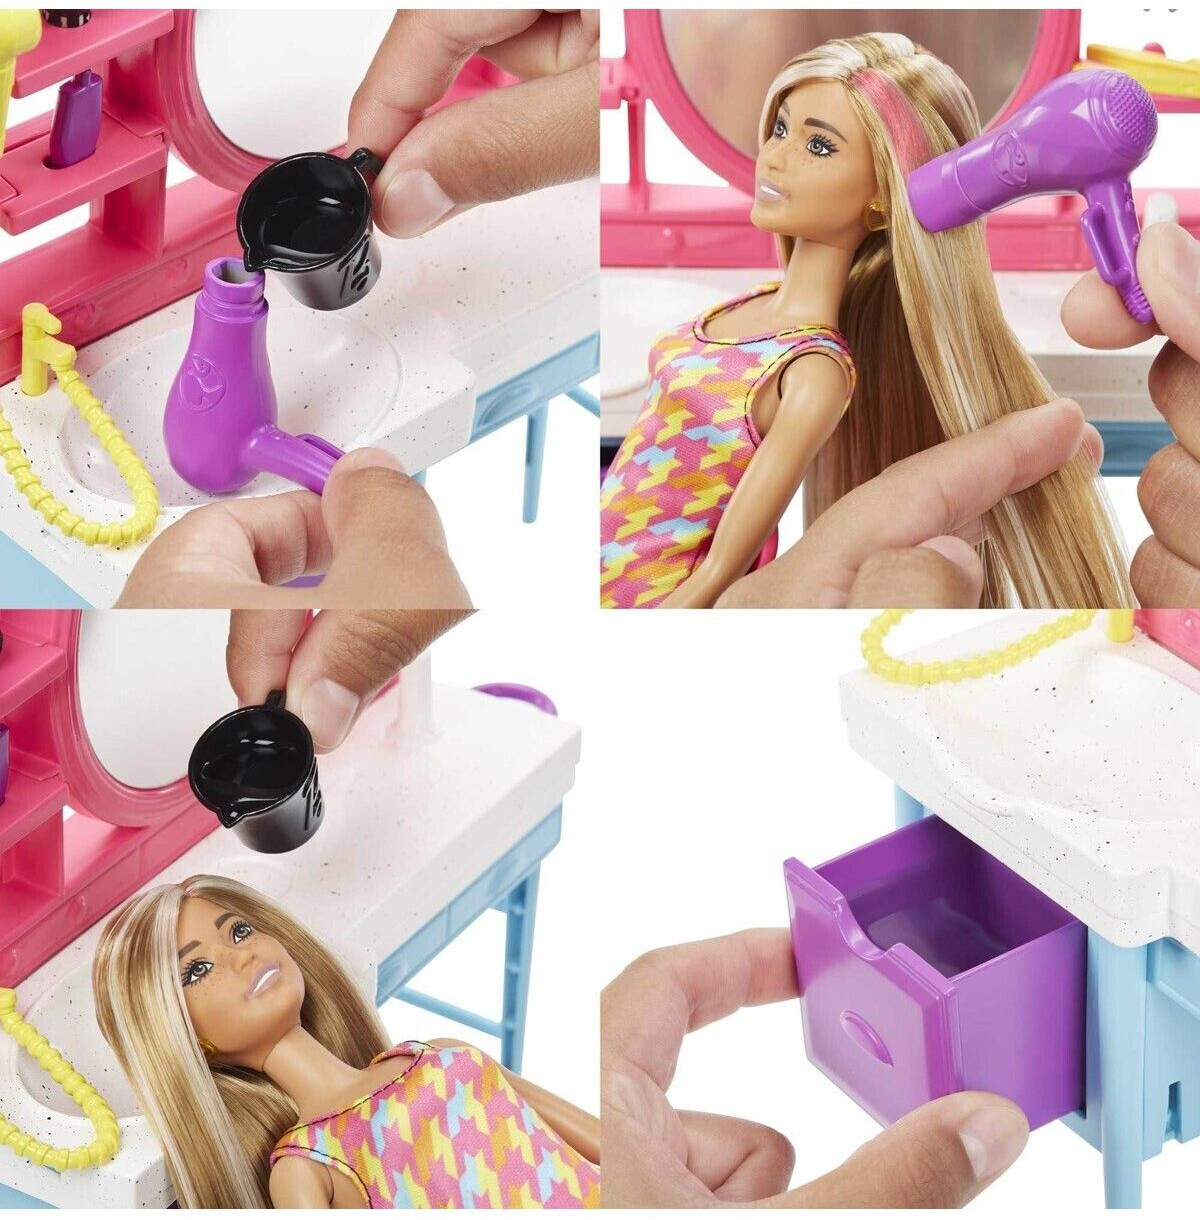 BARBIE Coffret salon de coiffure avec poupée, meubles et accessoires -  Barbie pas cher 